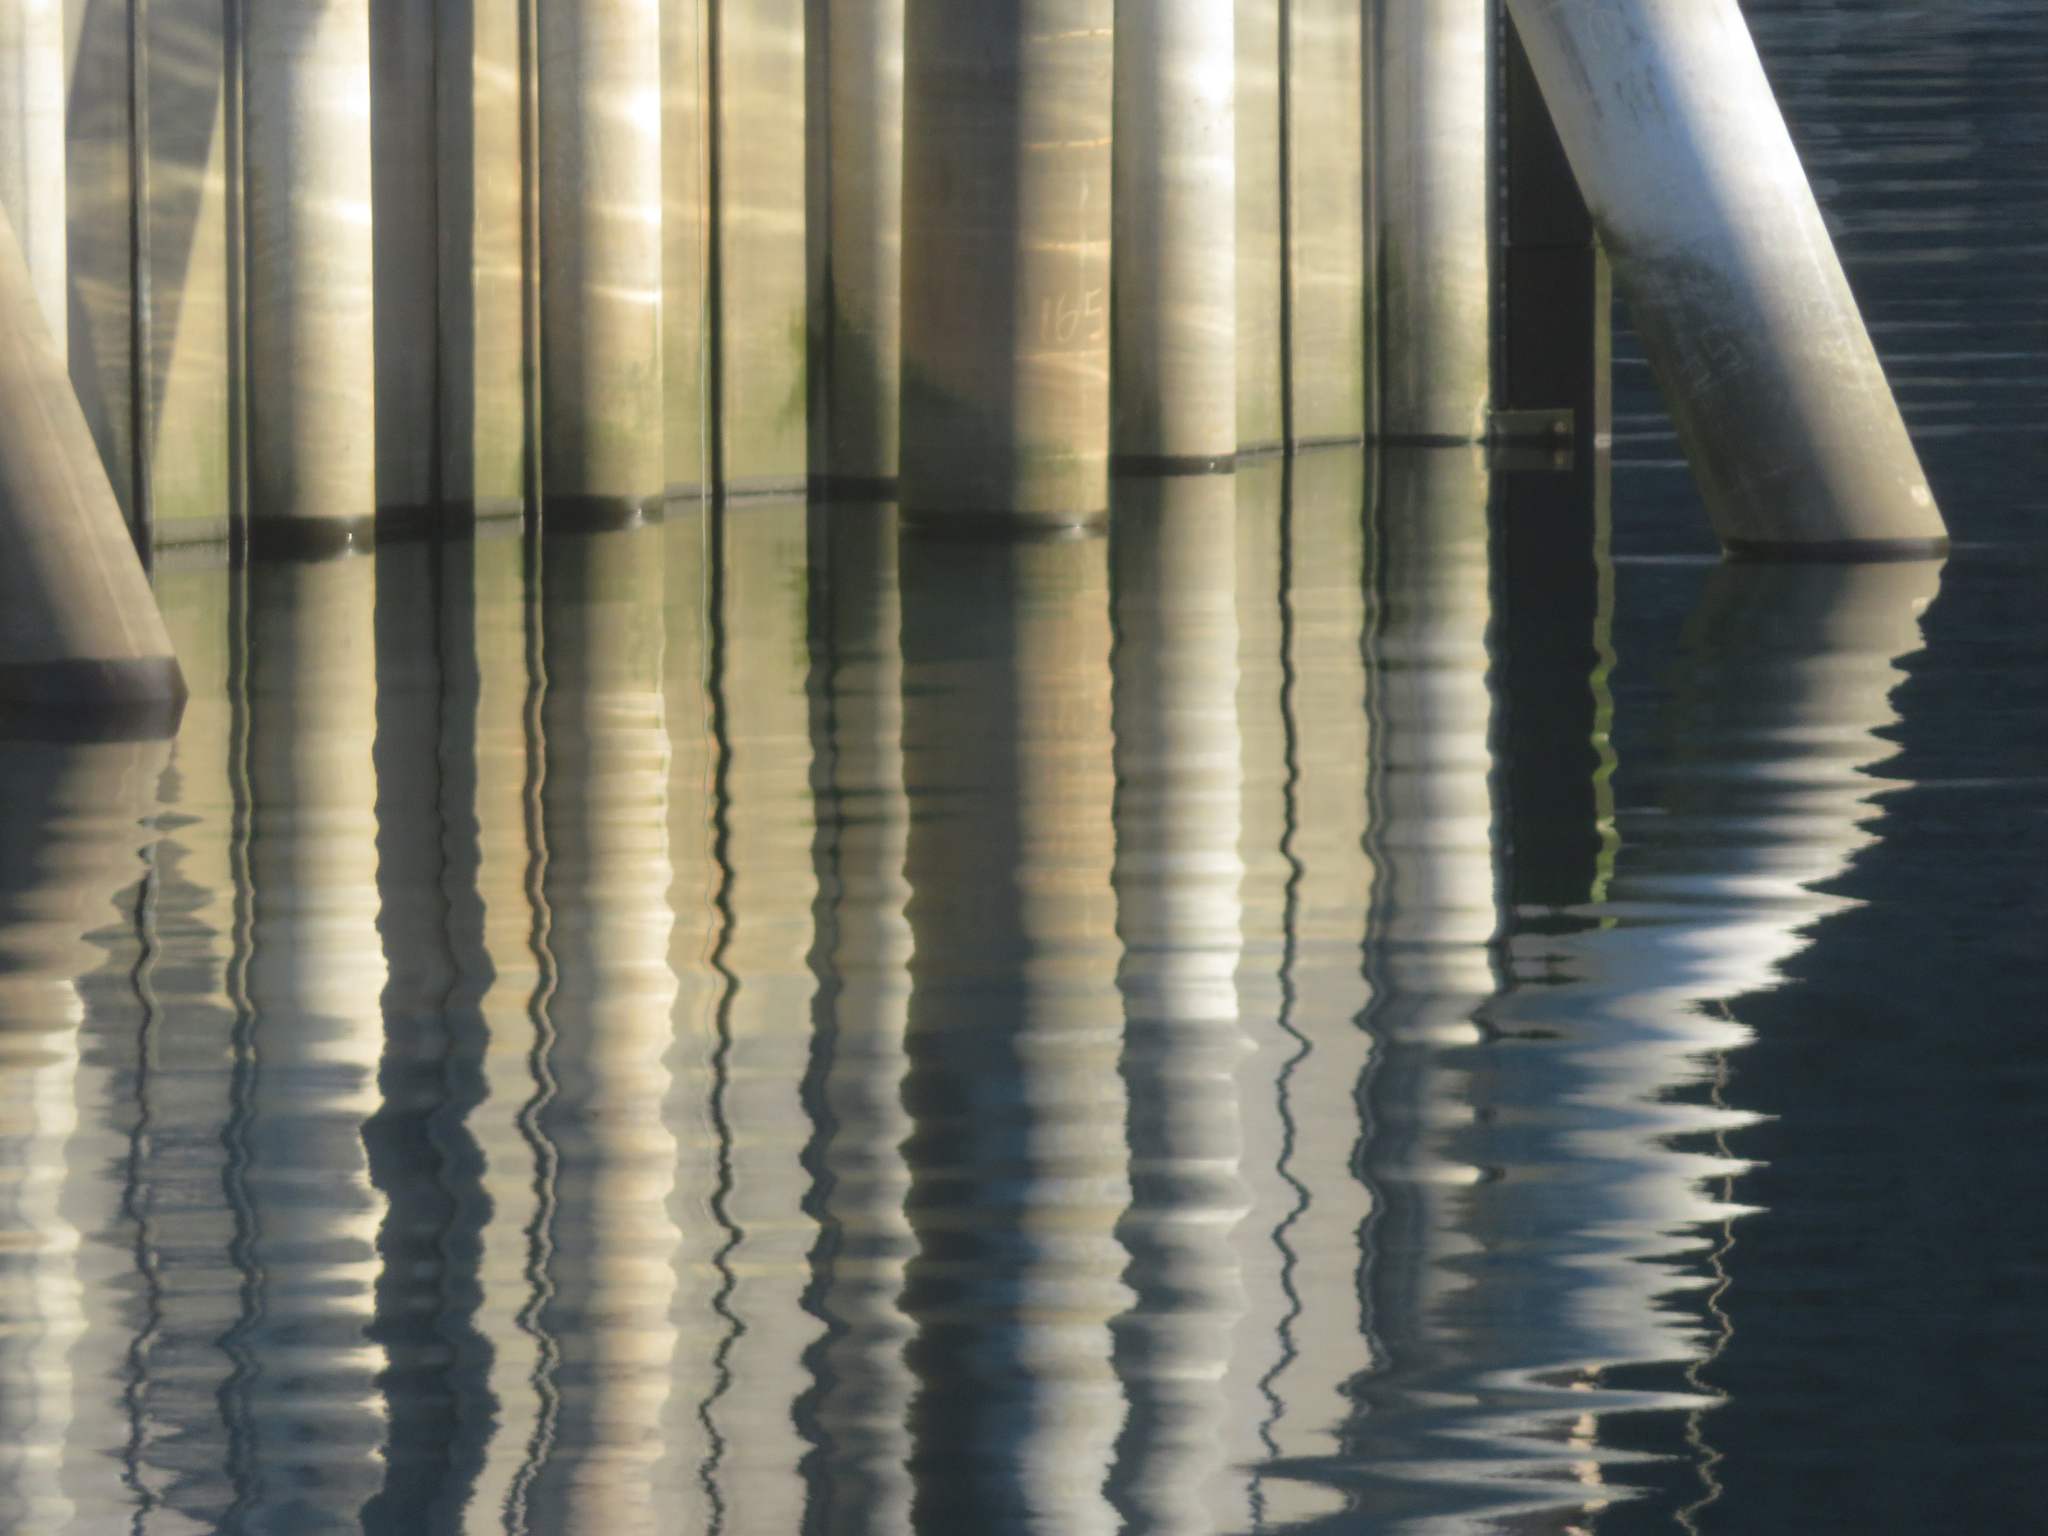 Reflection of pilings at the harbor. Photo by Ray Tsang.